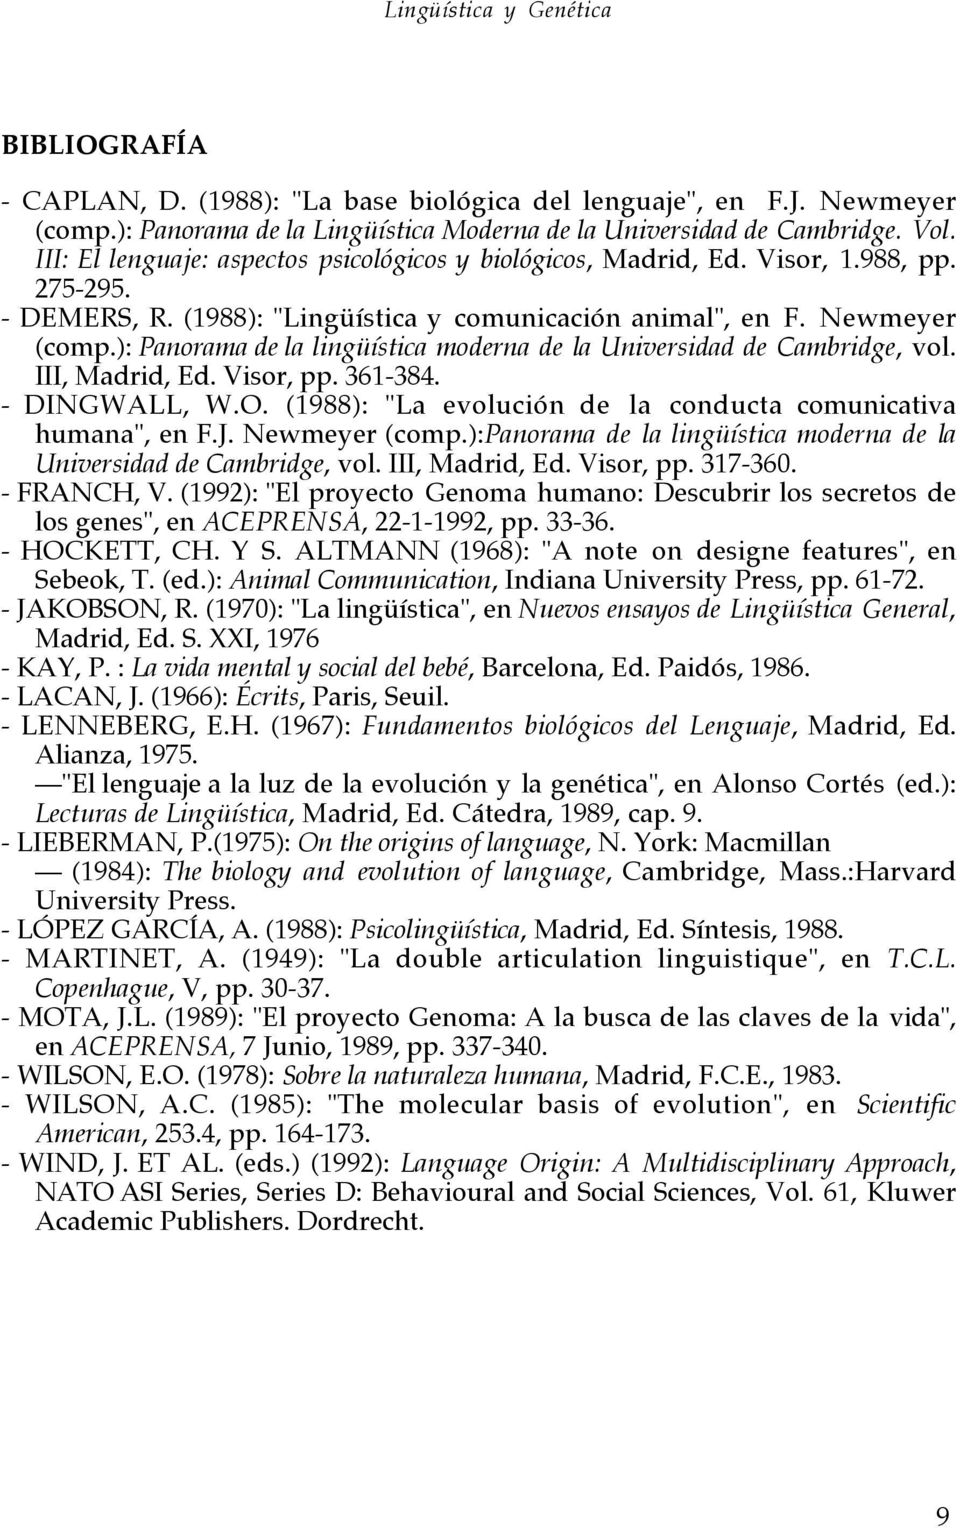 ): Panorama de la lingüística moderna de la Universidad de Cambridge, vol. III, Madrid, Ed. Visor, pp. 361-384. - DINGWALL, W.O. (1988): "La evolución de la conducta comunicativa humana", en F.J.